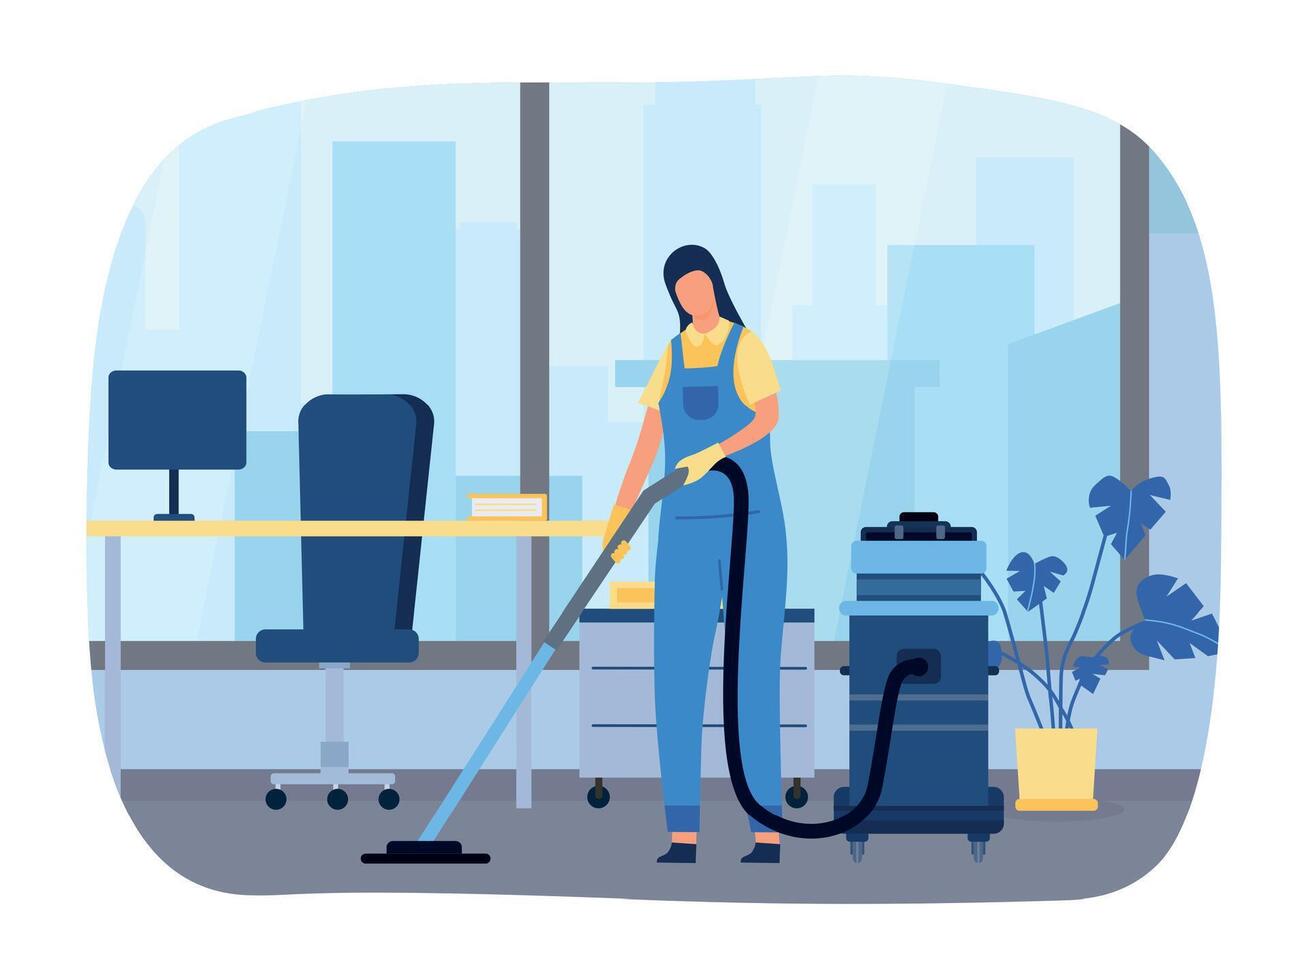 Arbeitsplatz Aufräumen Vektor Konzept. Reinigung Unternehmen Mitarbeiter im Uniform Arbeiten mit Ausrüstung und Staubsaugen Fußboden